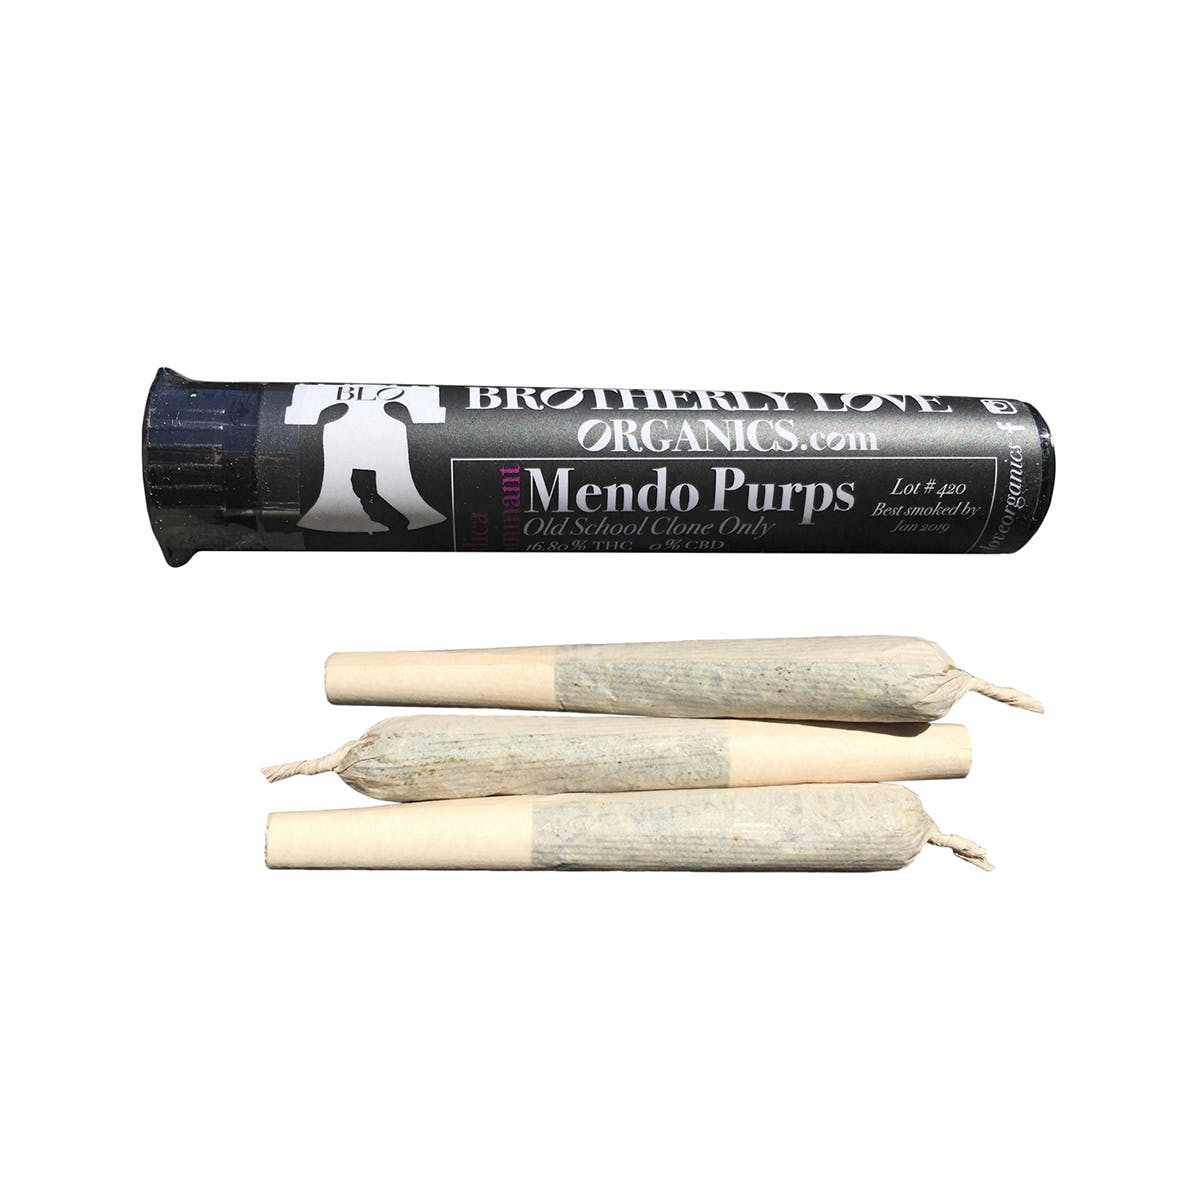 marijuana-dispensaries-barbary-coast-in-san-francisco-3-pack-premium-joints-mendo-purps